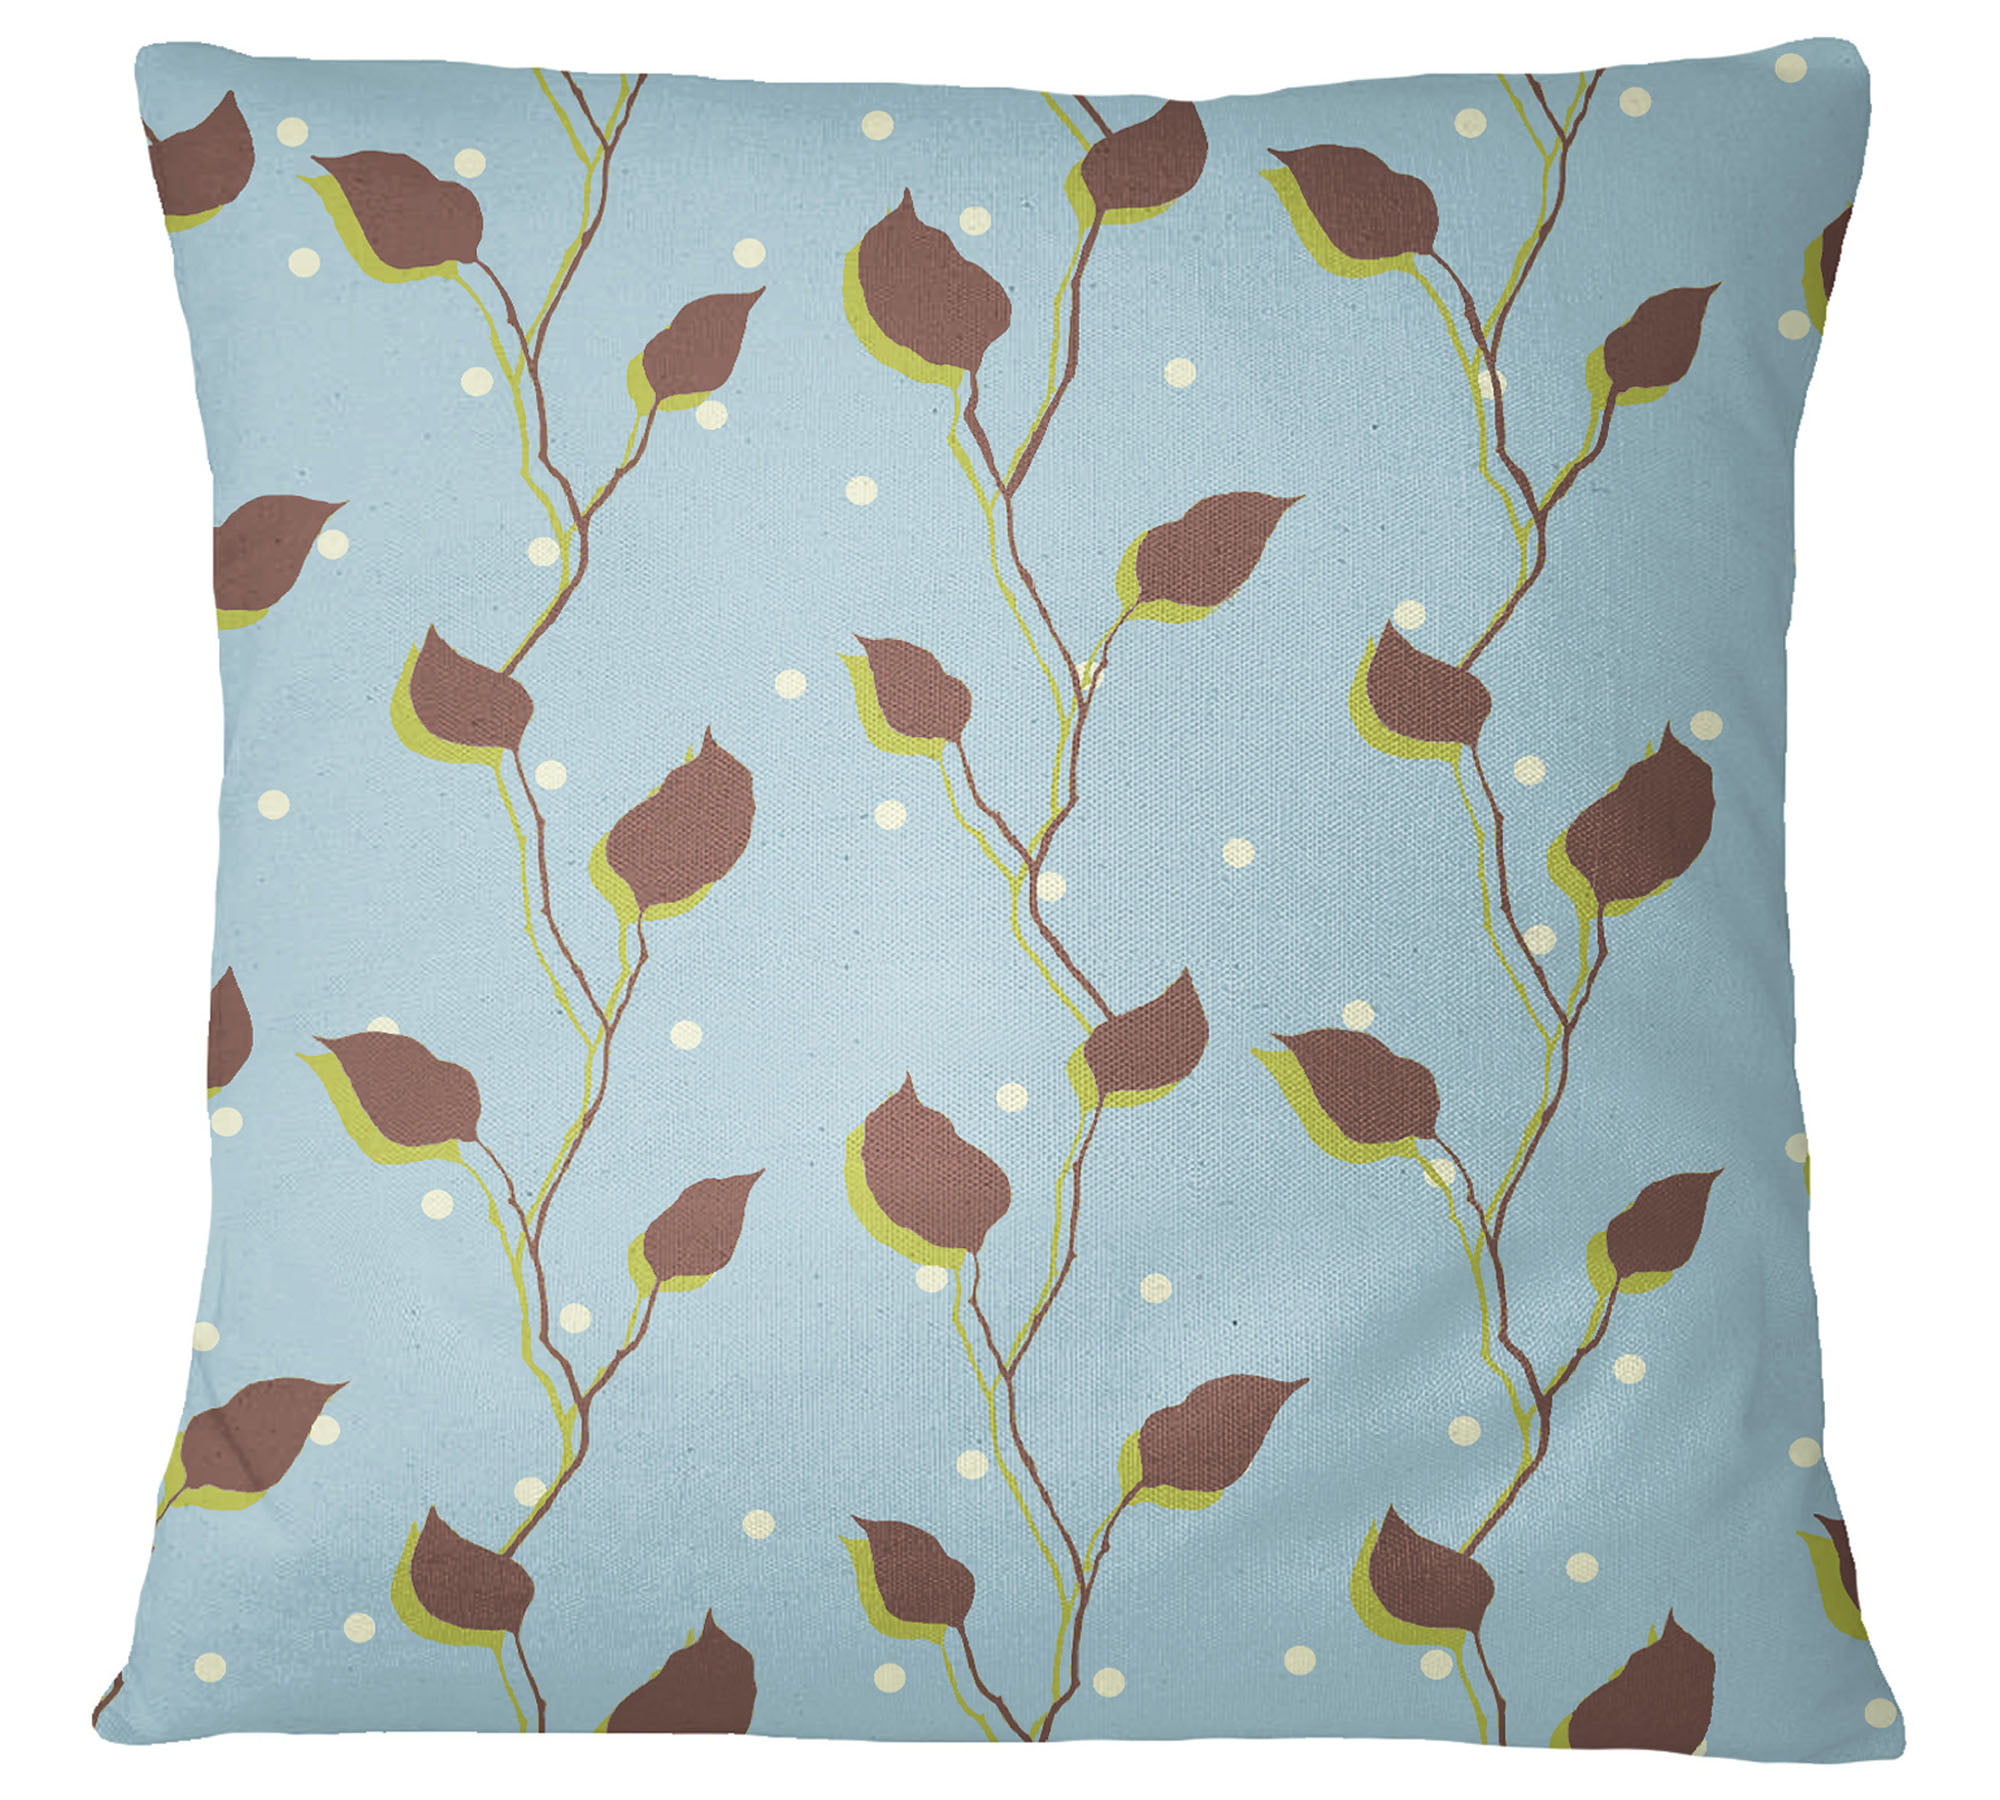 Details about   S4Sassy Decorative 2 Pcs Cotton Poplin  Leaf Print Cushion Cover Pillow Sham 